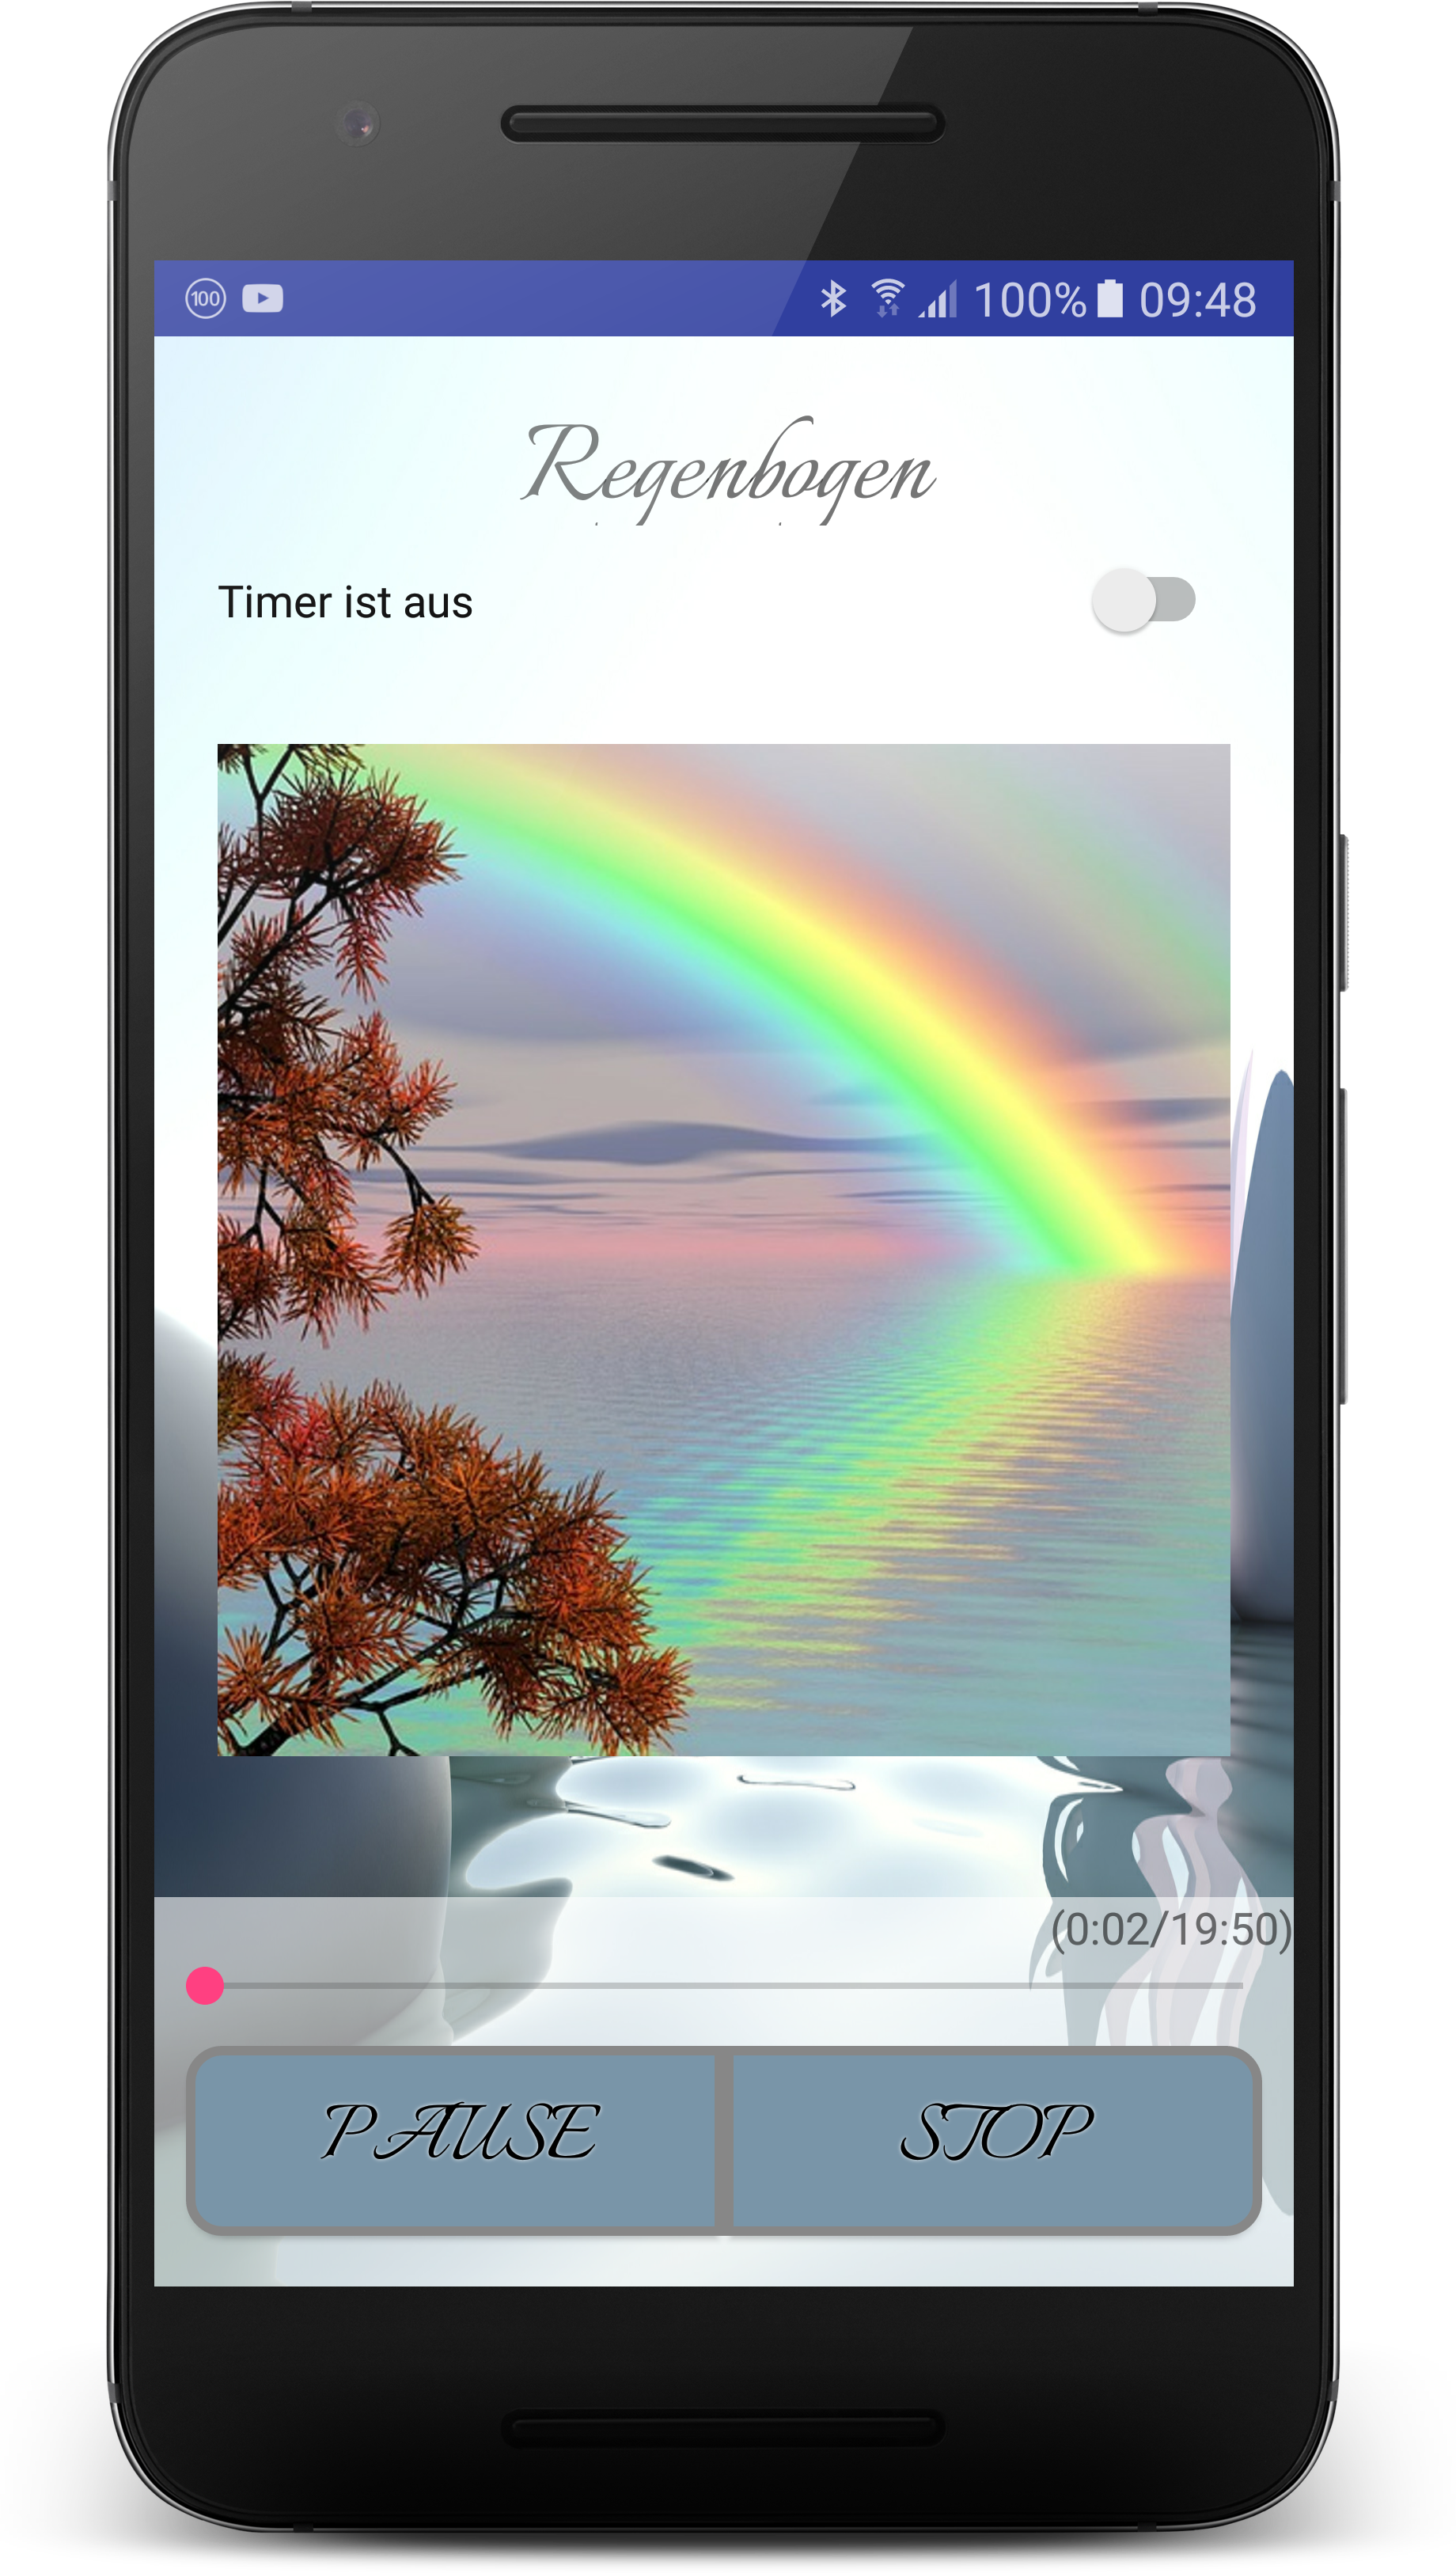 Android application Entspannungsreise Regenbogen screenshort